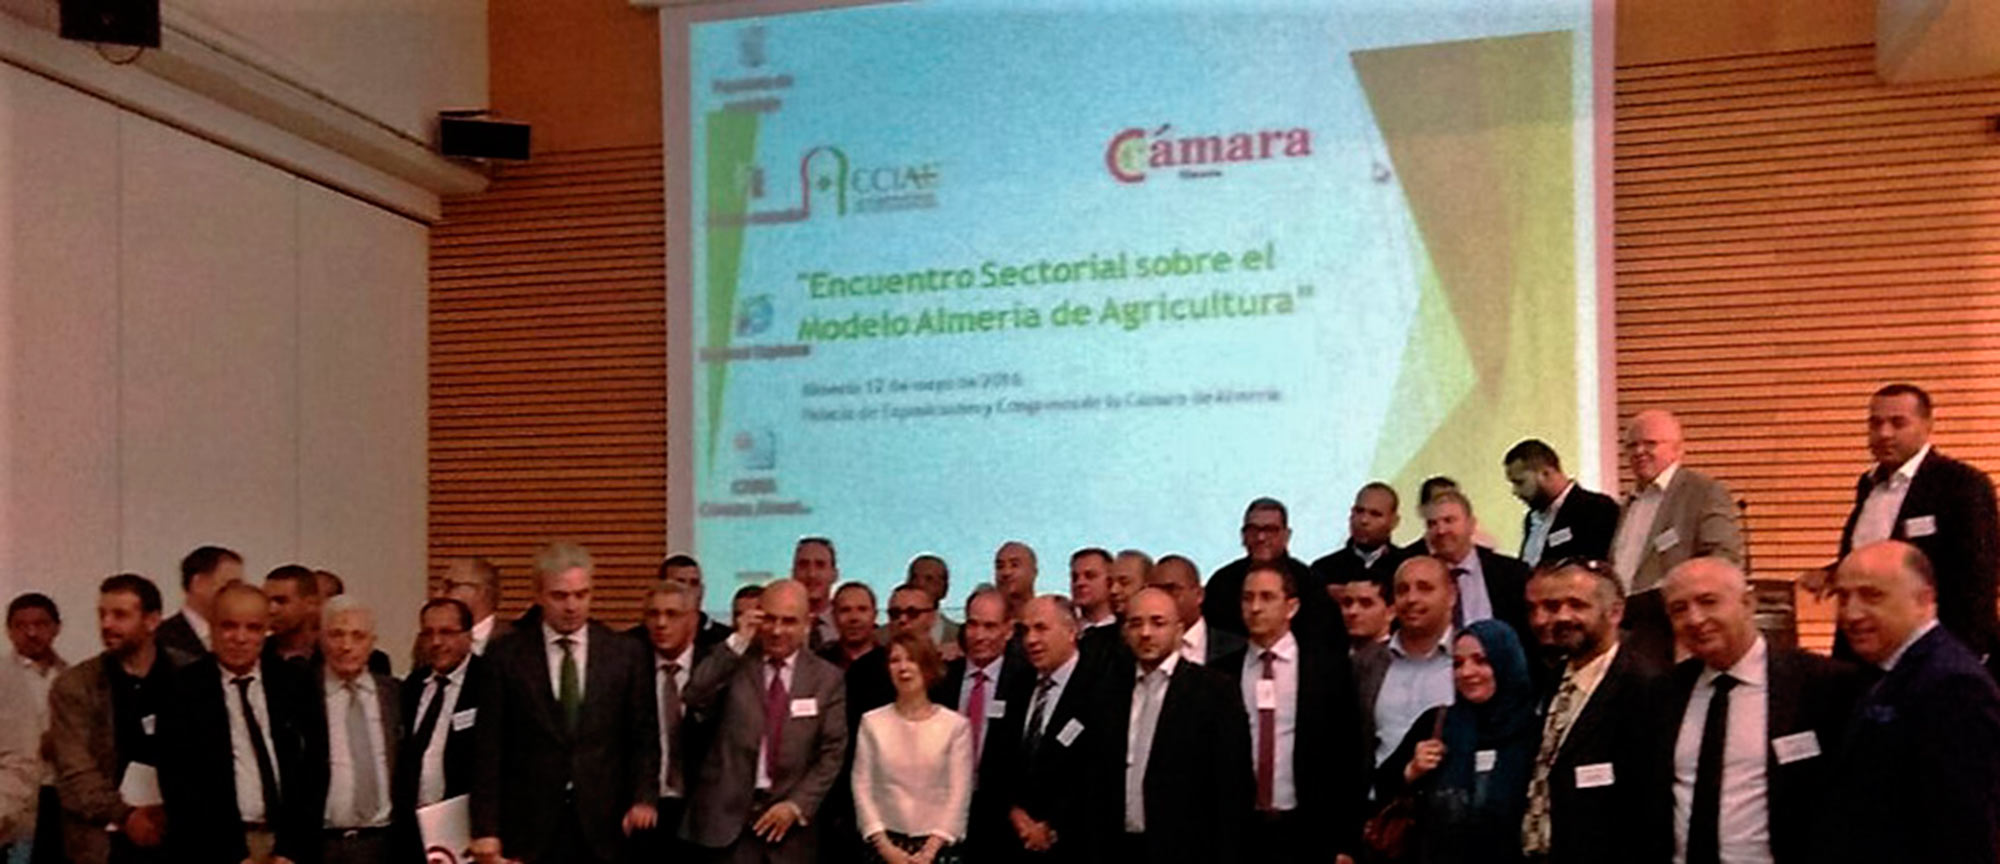 Una veintena de empresas agrícolas en el encuentro hispano-argelino